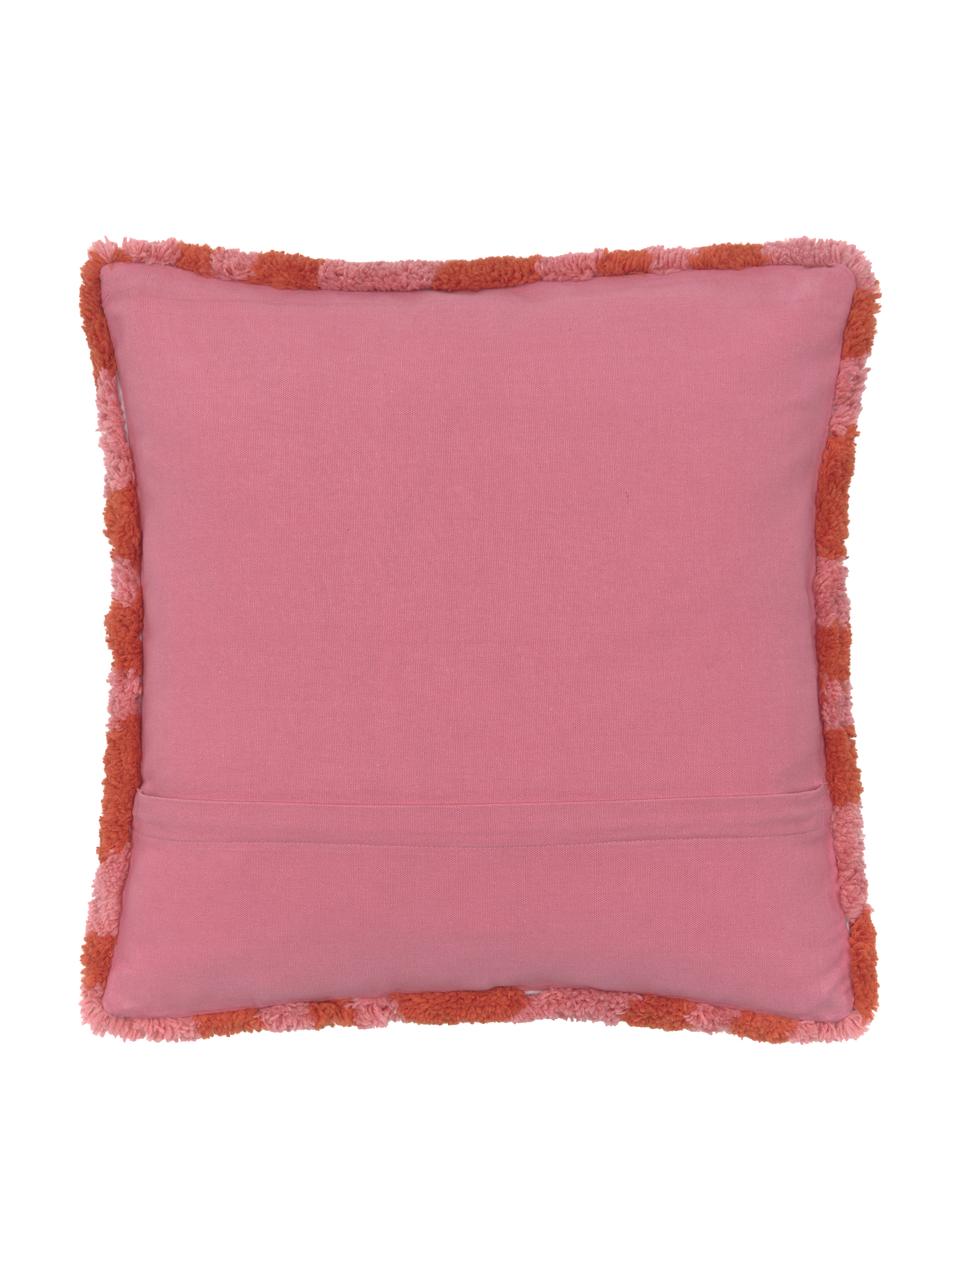 Federa arredo soffice color rosso/rosa Gaja, Retro: 100% cotone, Rosso, rosa, Larg. 45 x Lung. 45 cm